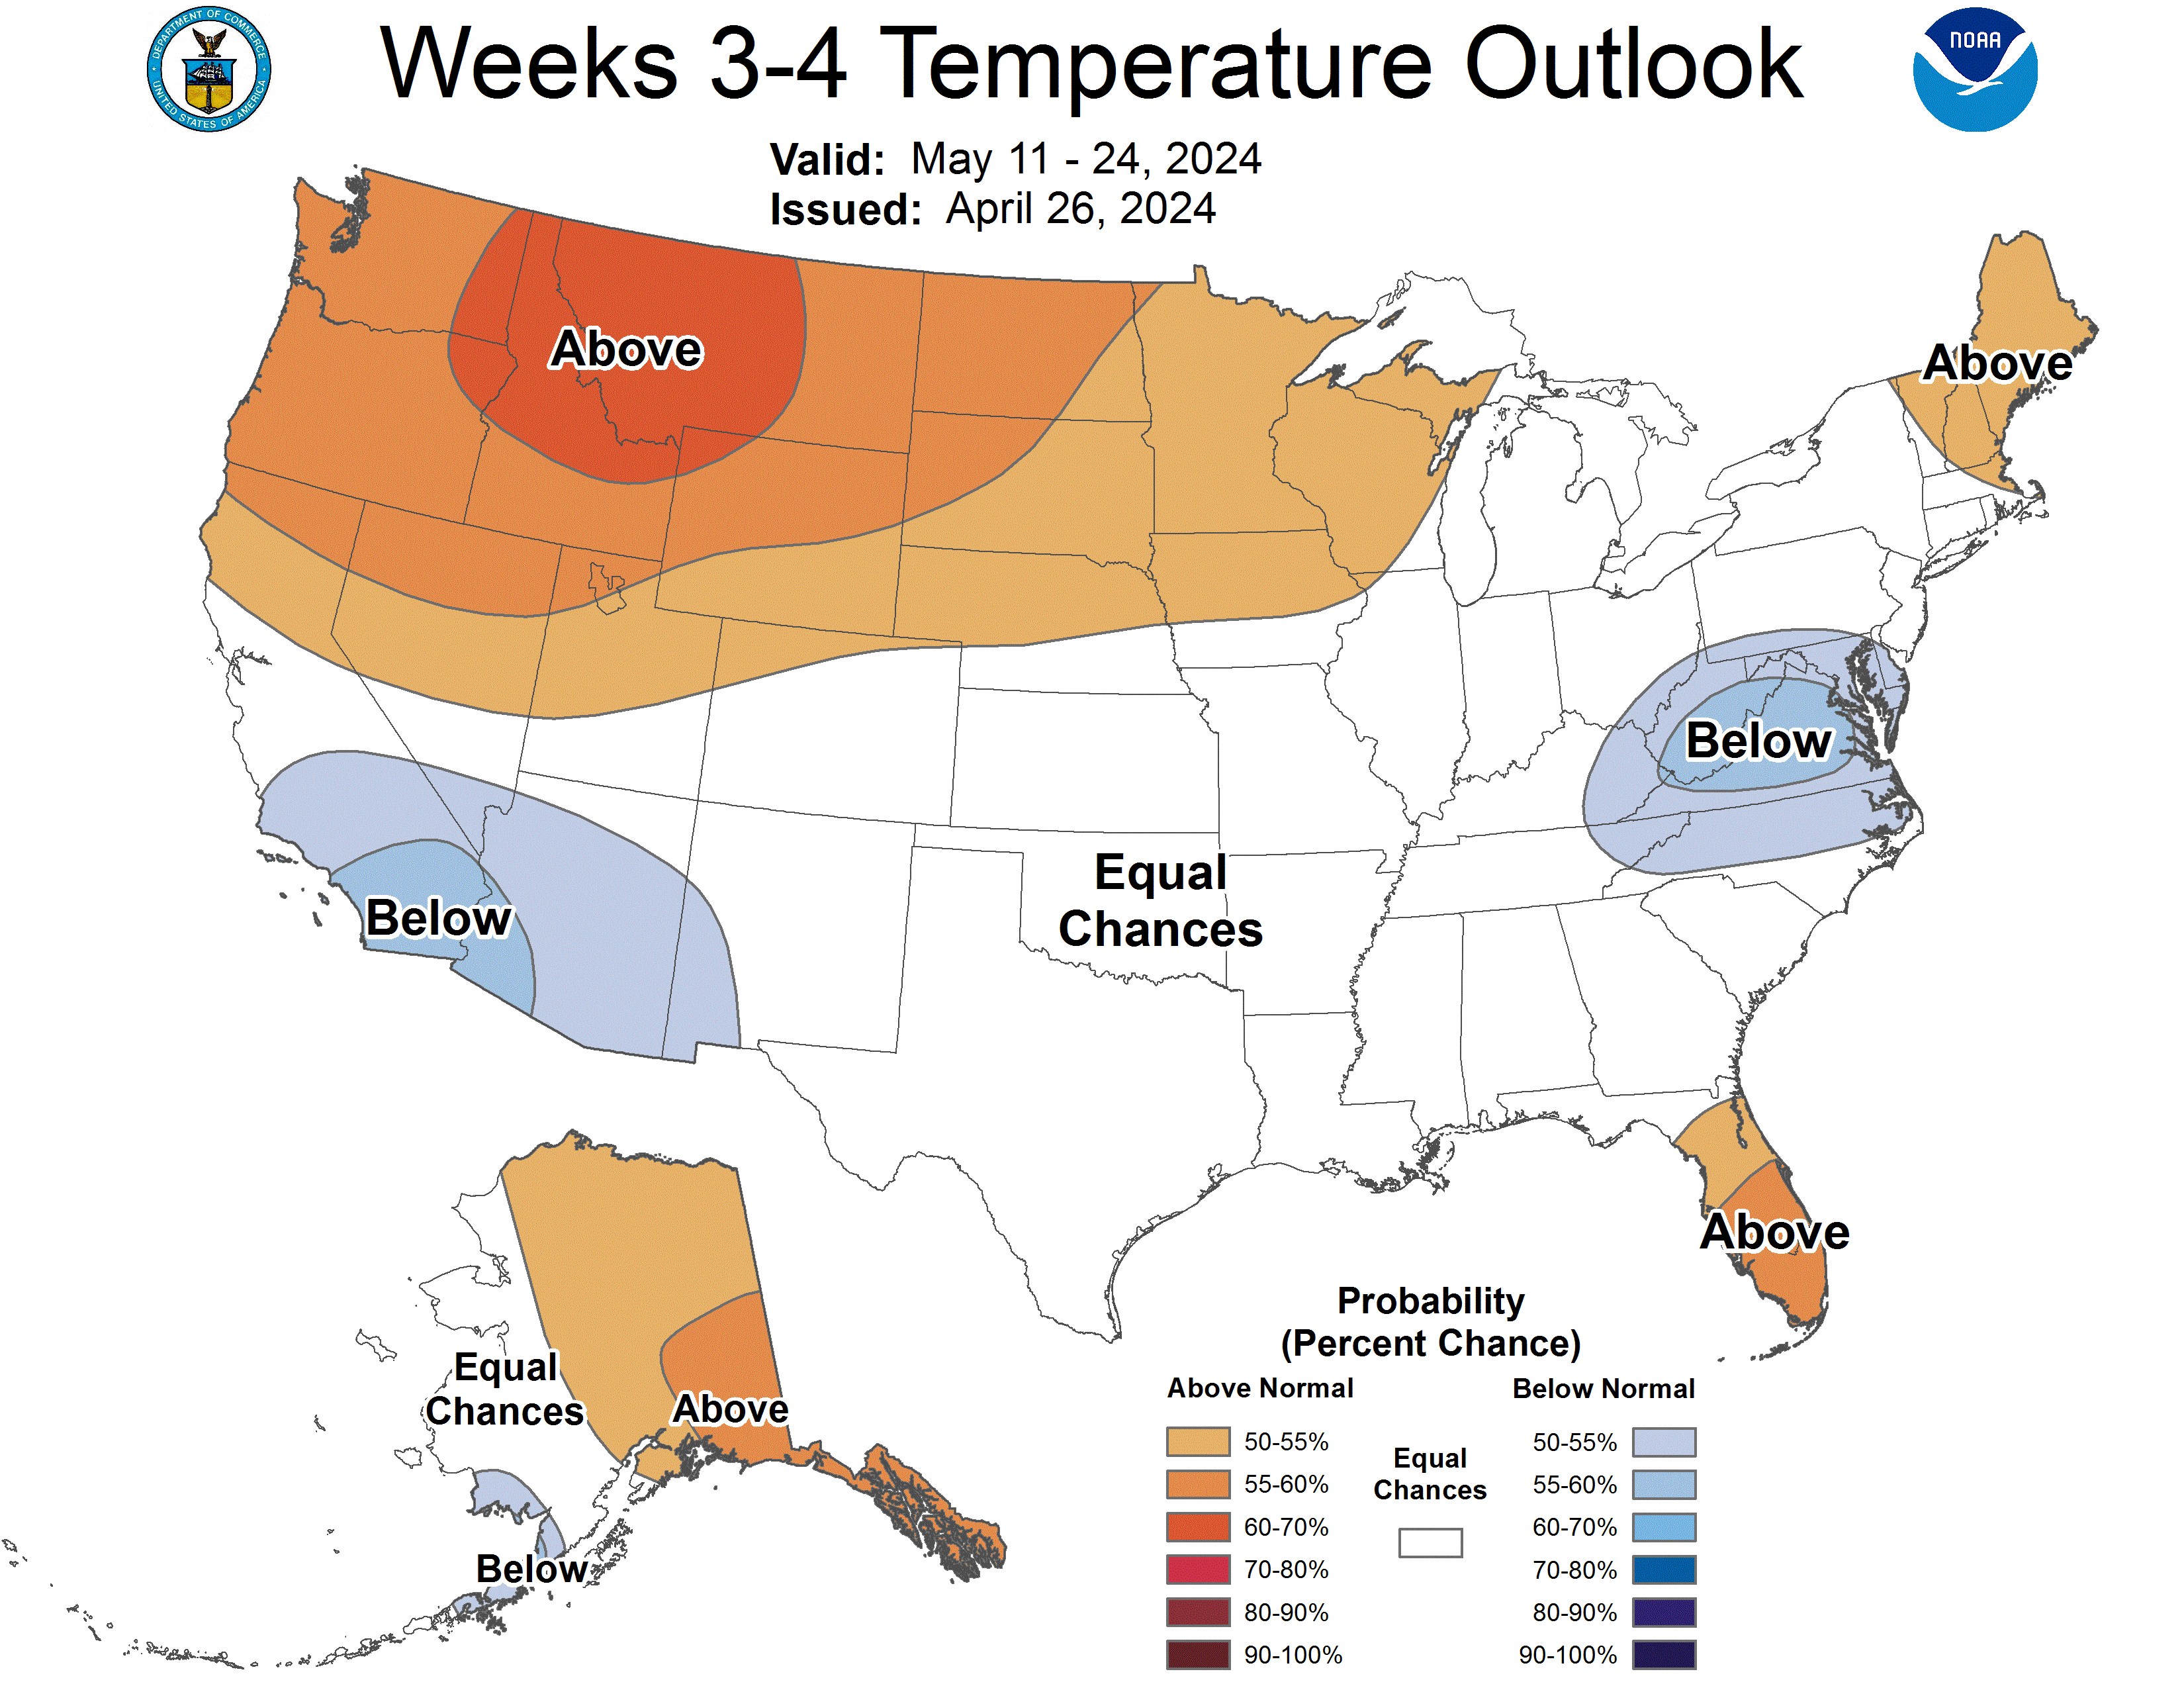 3-4 week temperature outlook